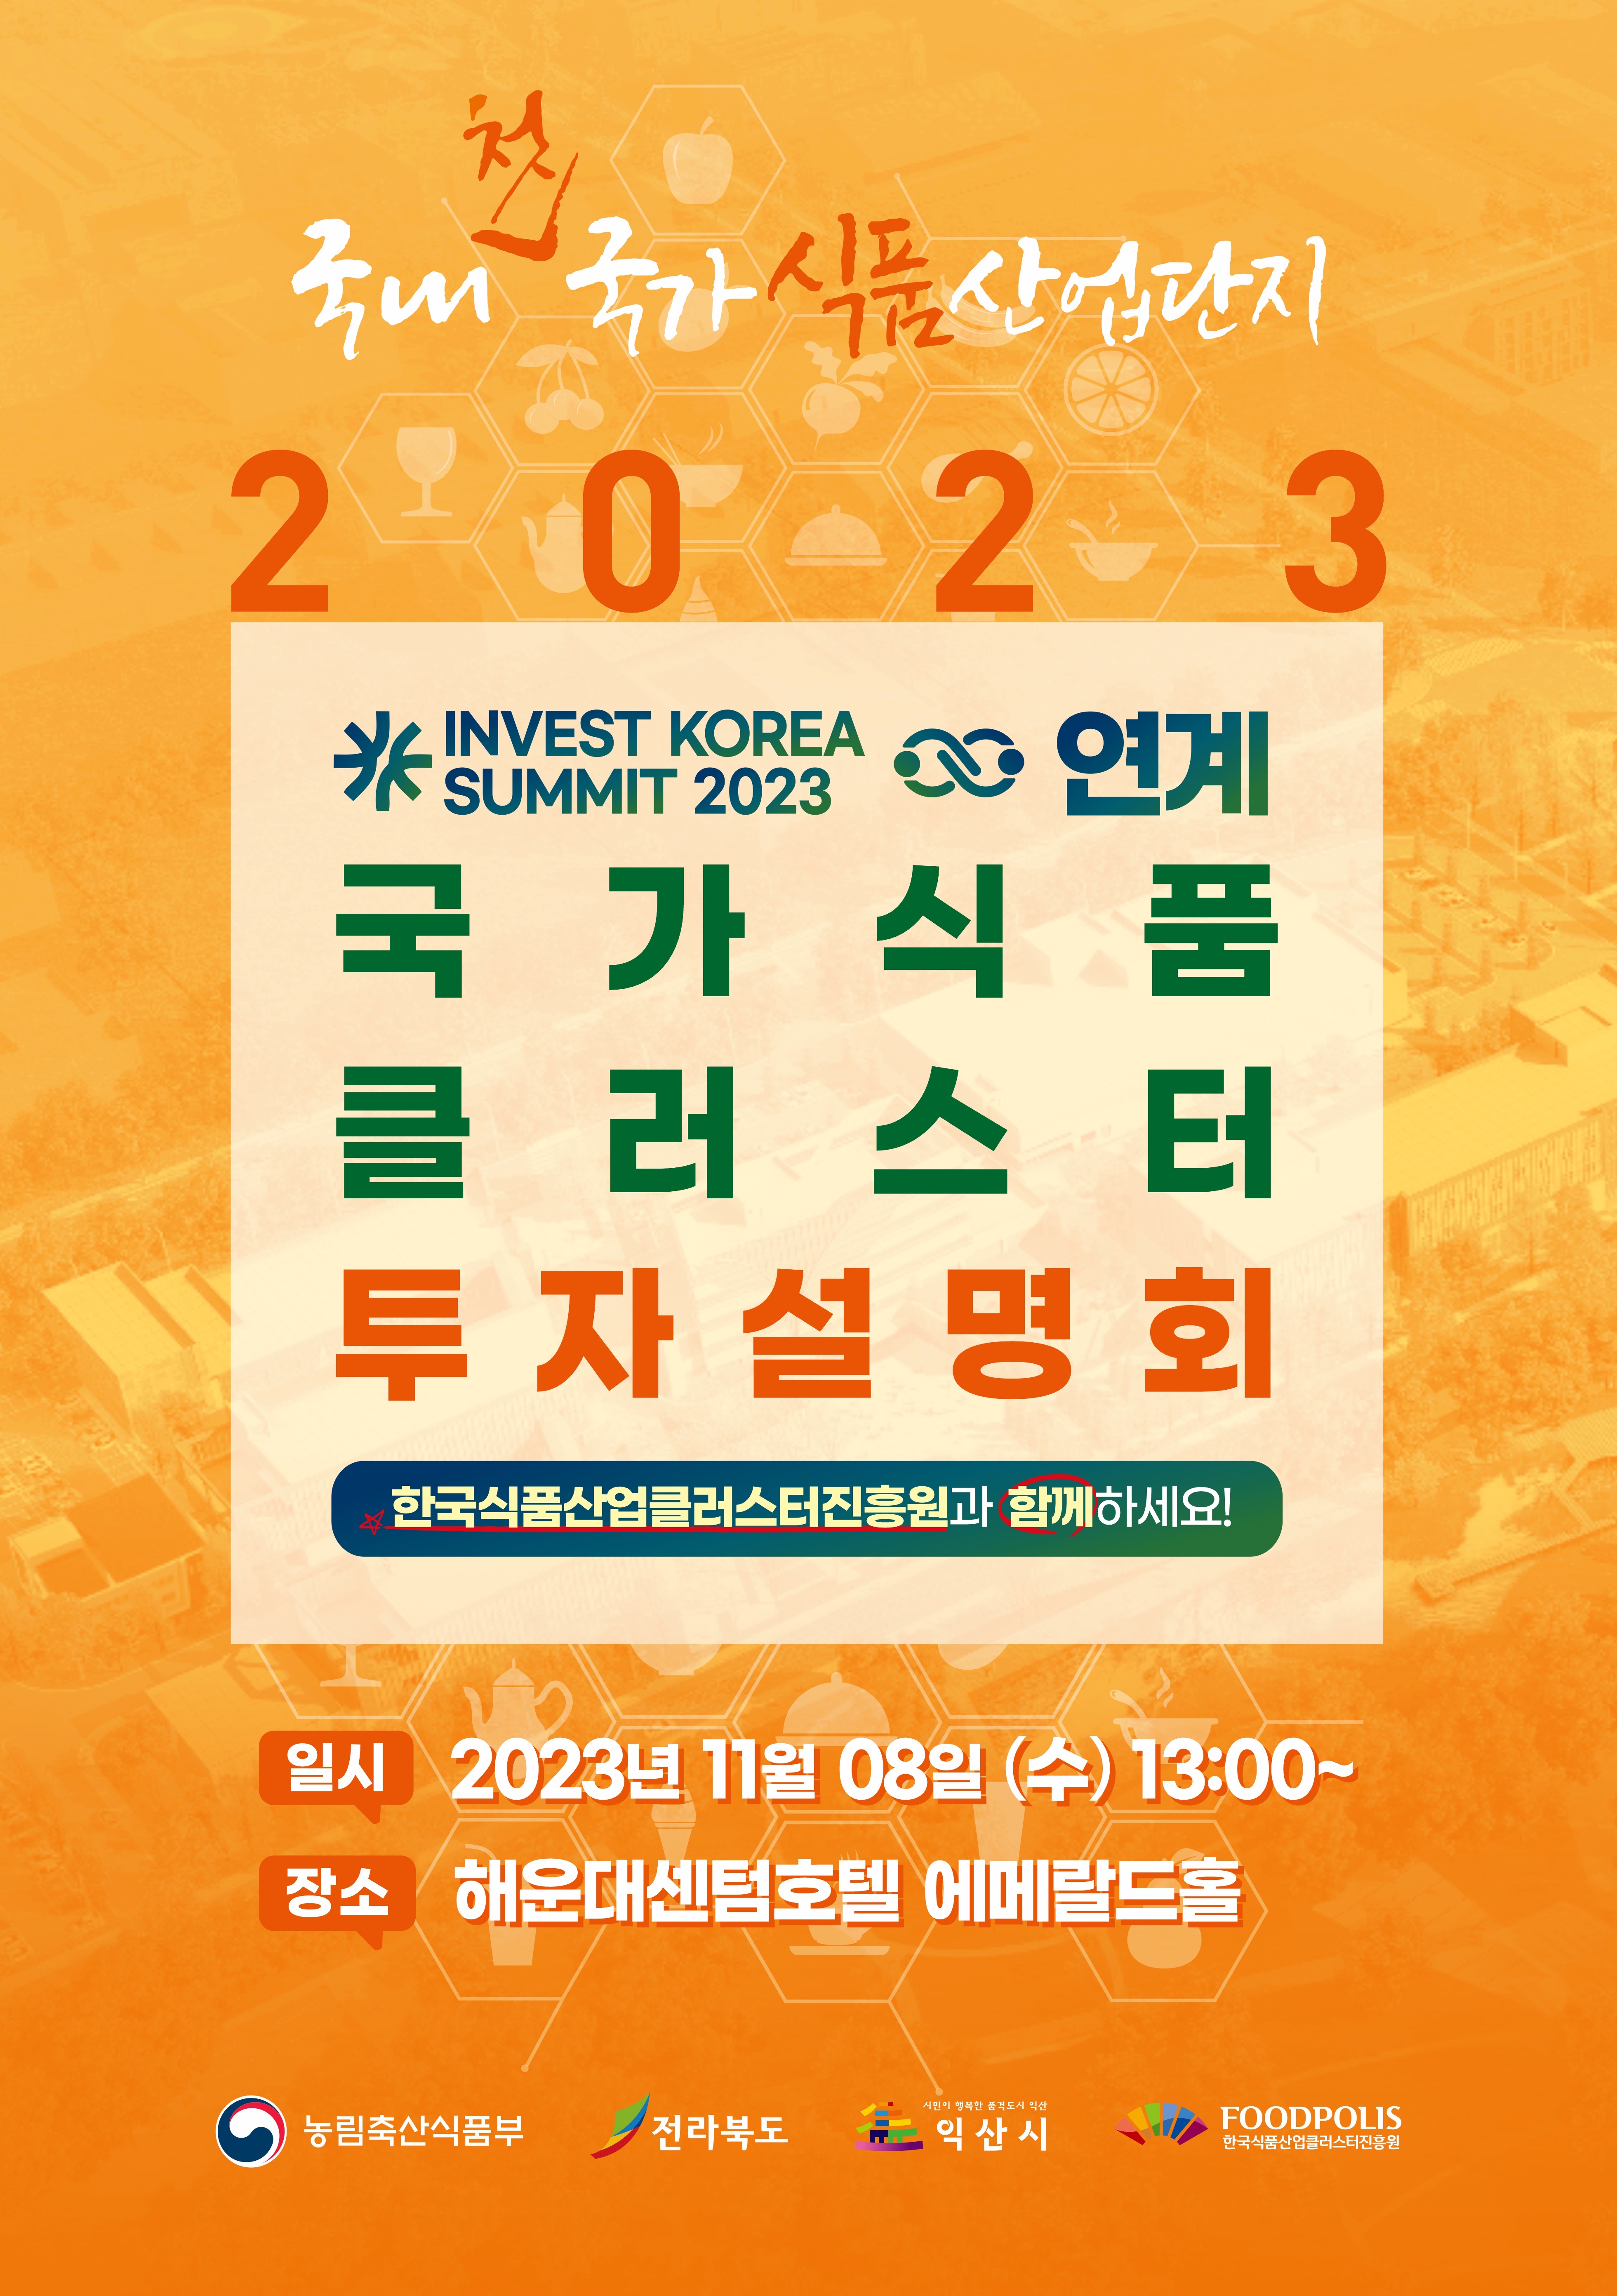 (11.08) 식품진흥원, 부산 Invest Korea Summit 연계 국가식품클러스터 투자유치설명회 개최_2